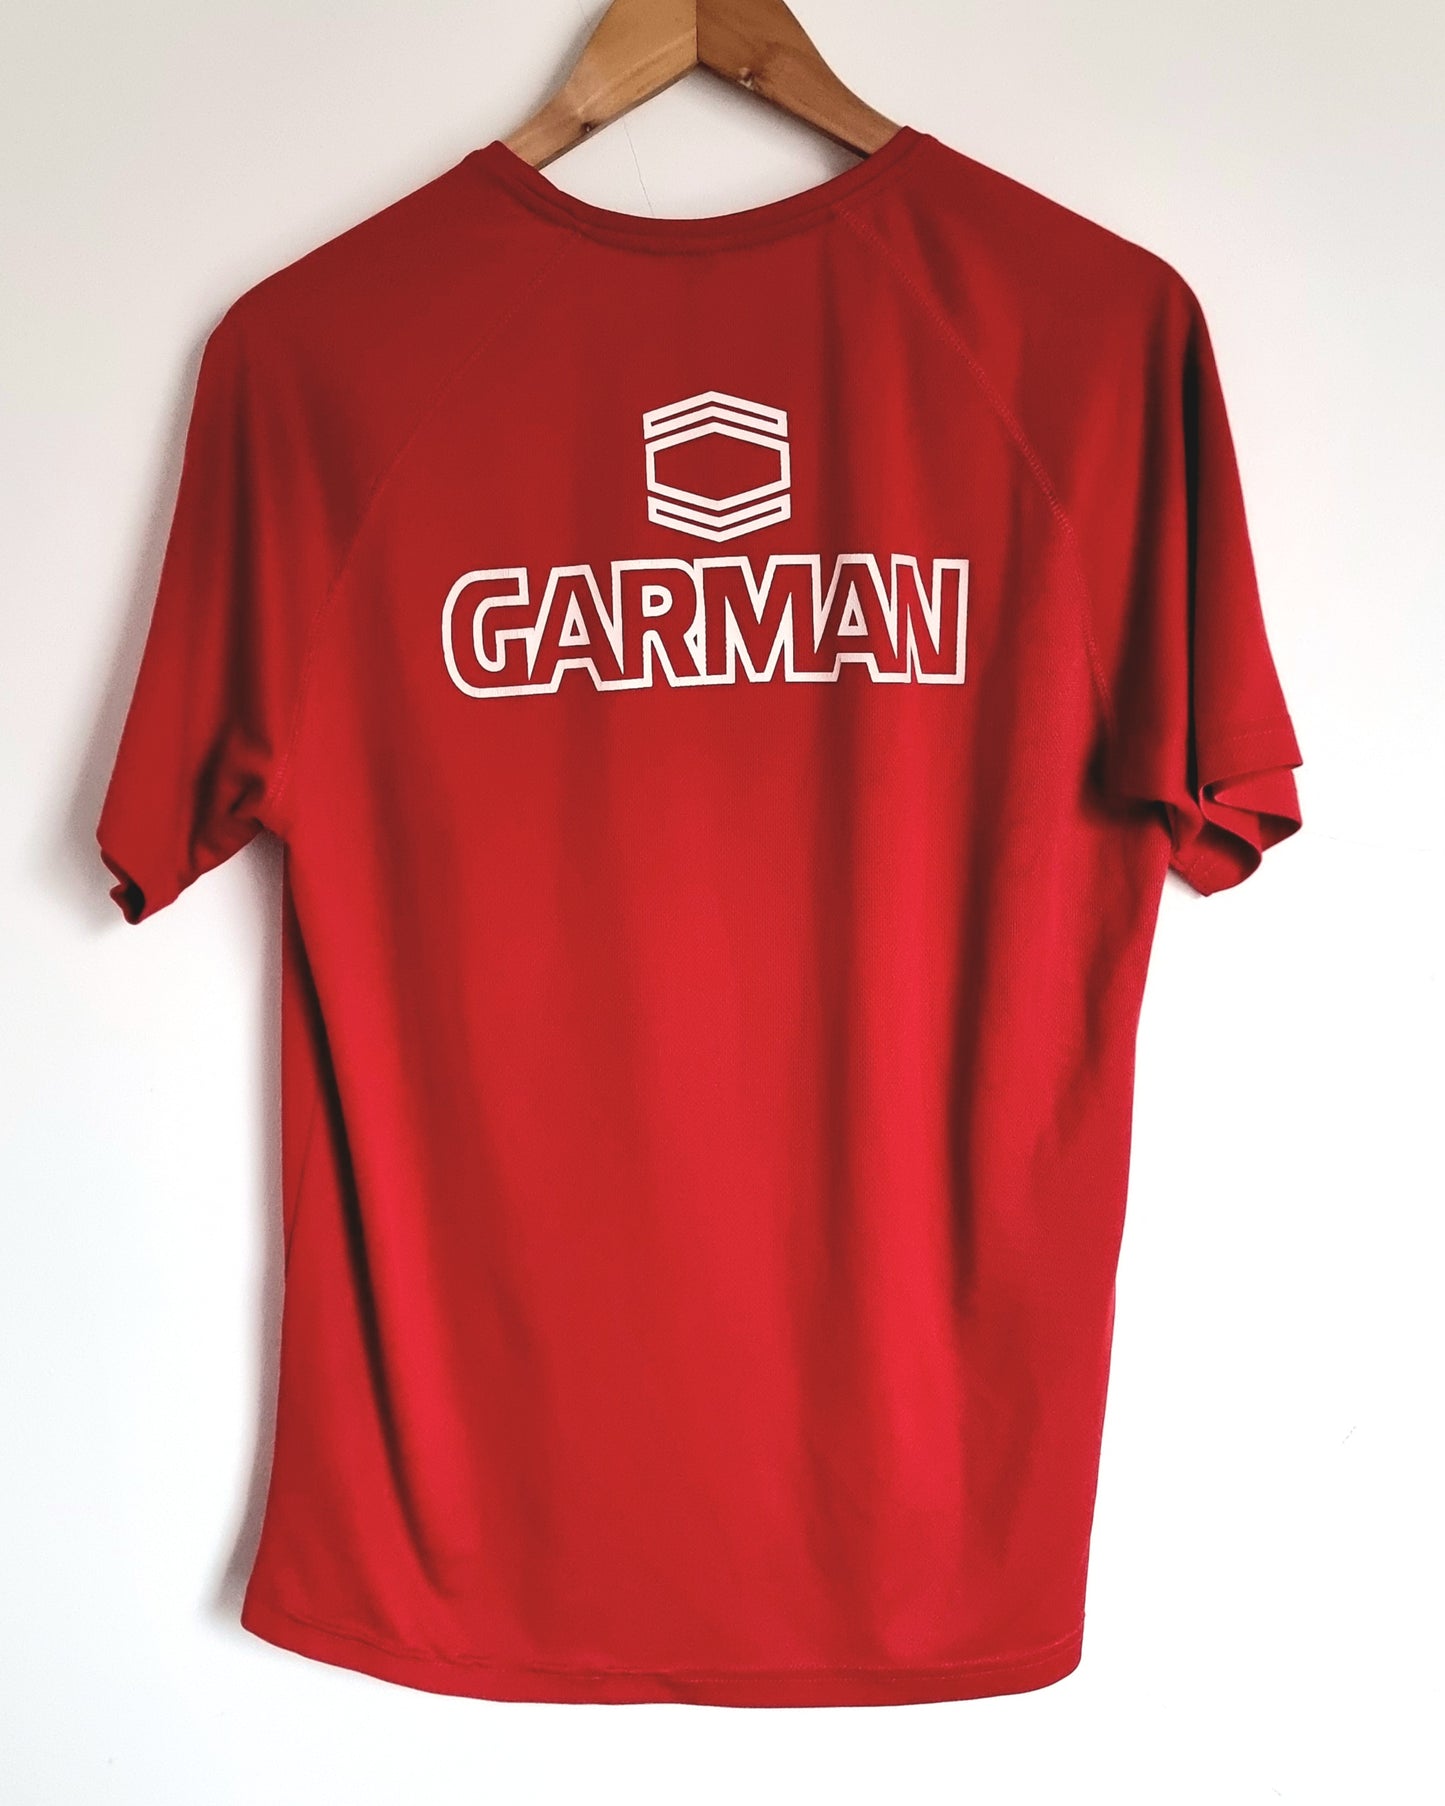 Garman U.S Cremonese Training Shirt Large